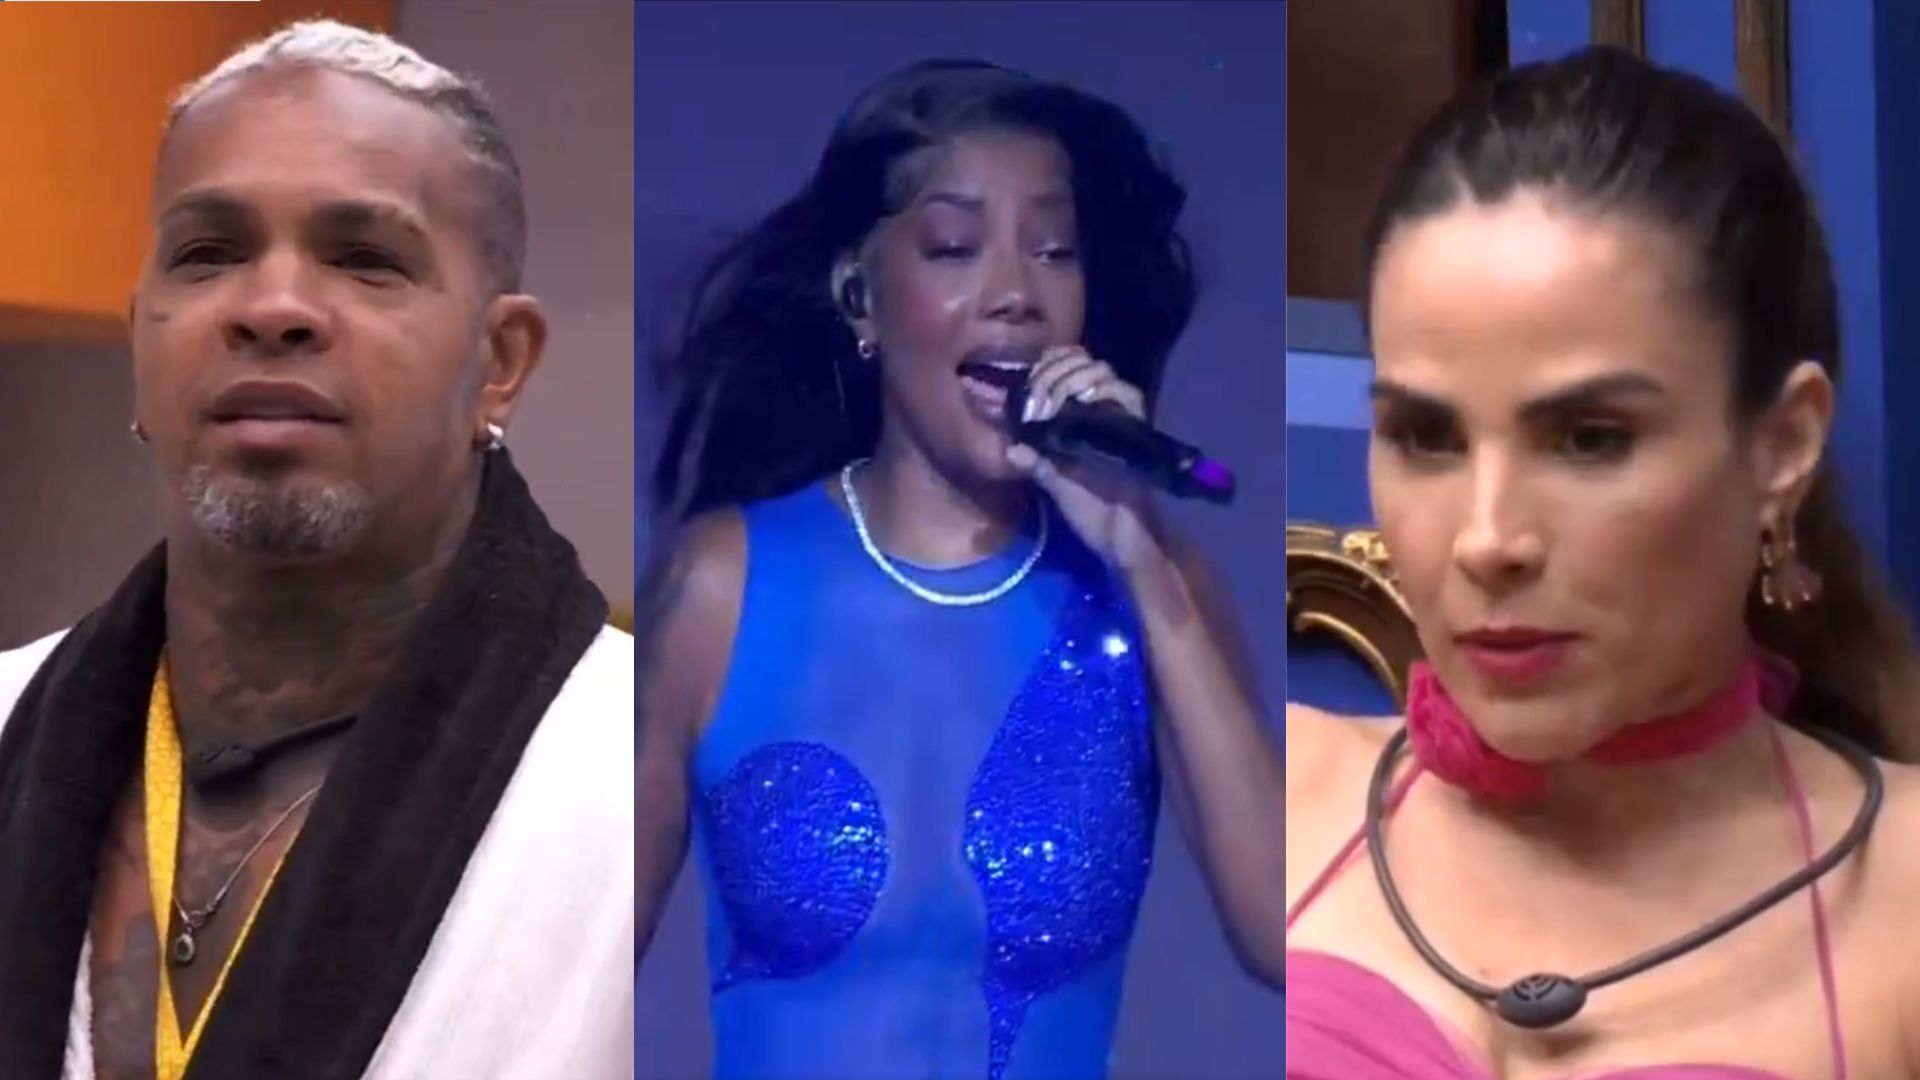 BBB24: Após show, Rodriguinho critica músicas de Ludmilla e Wanessa Camargo explica reação em festa: “Me sentindo péssima”; assista